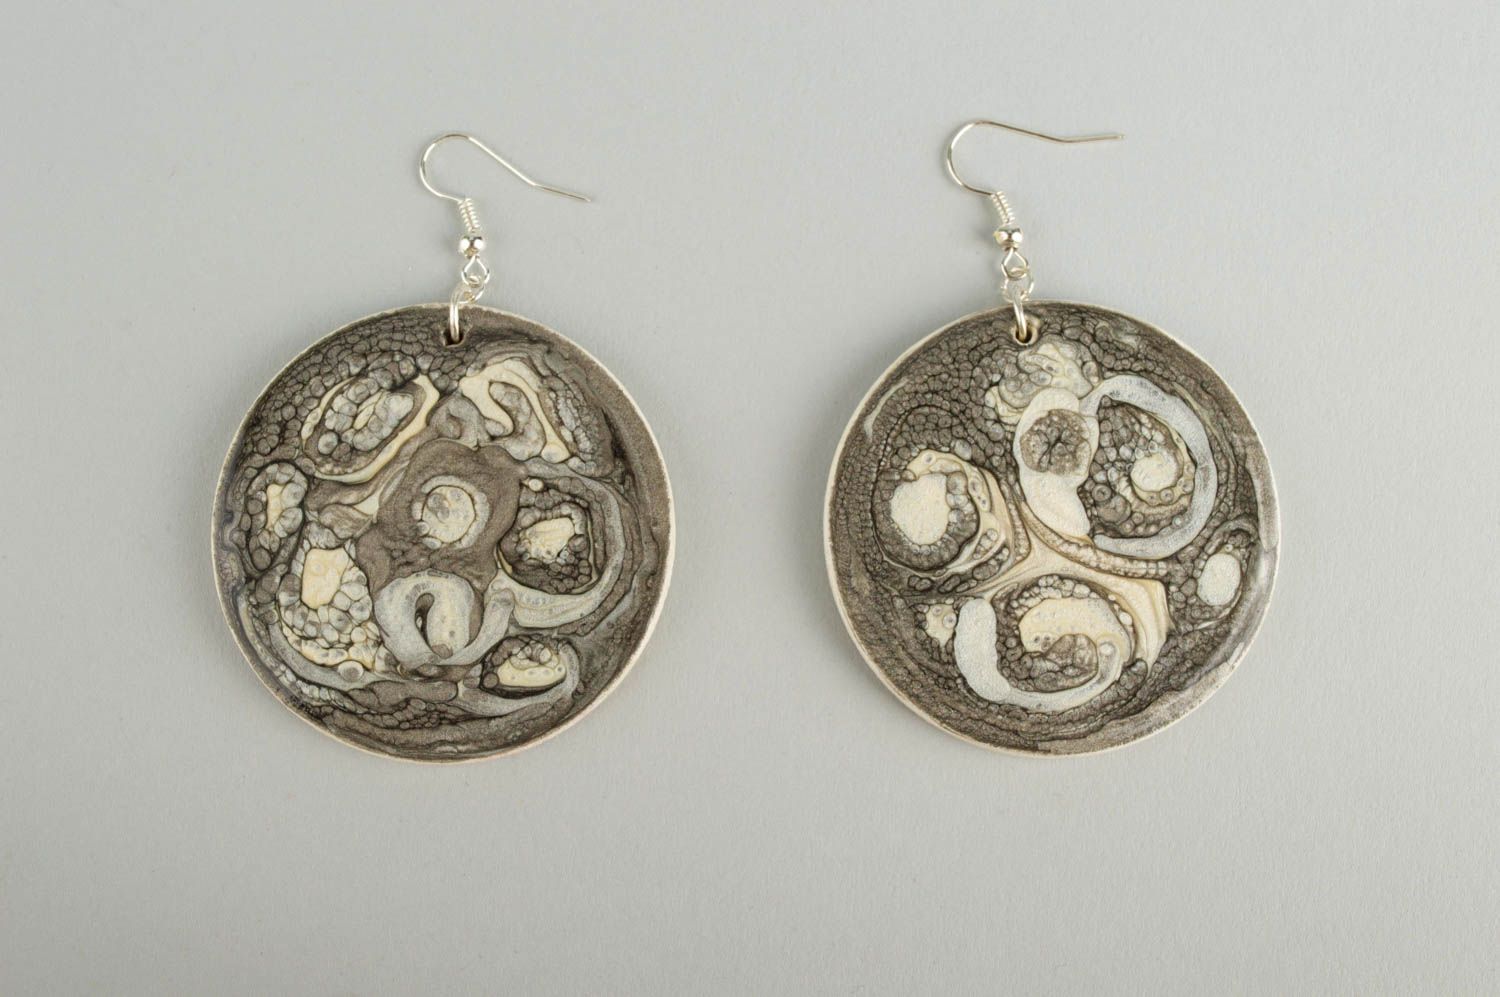 Wooden jewelry earrings for women wooden jewelry unique earrings gifts for women photo 2